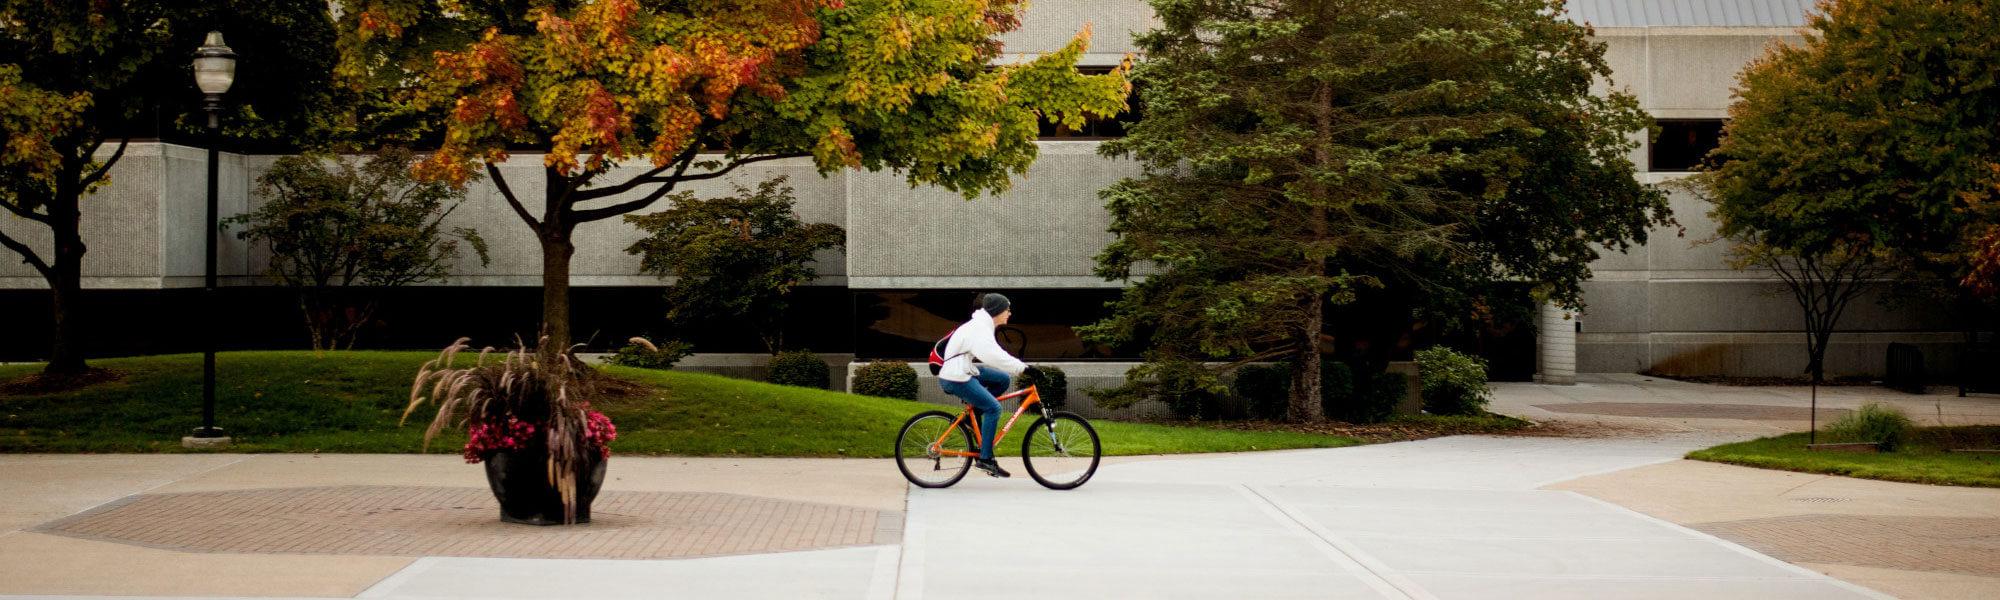 biking on campus